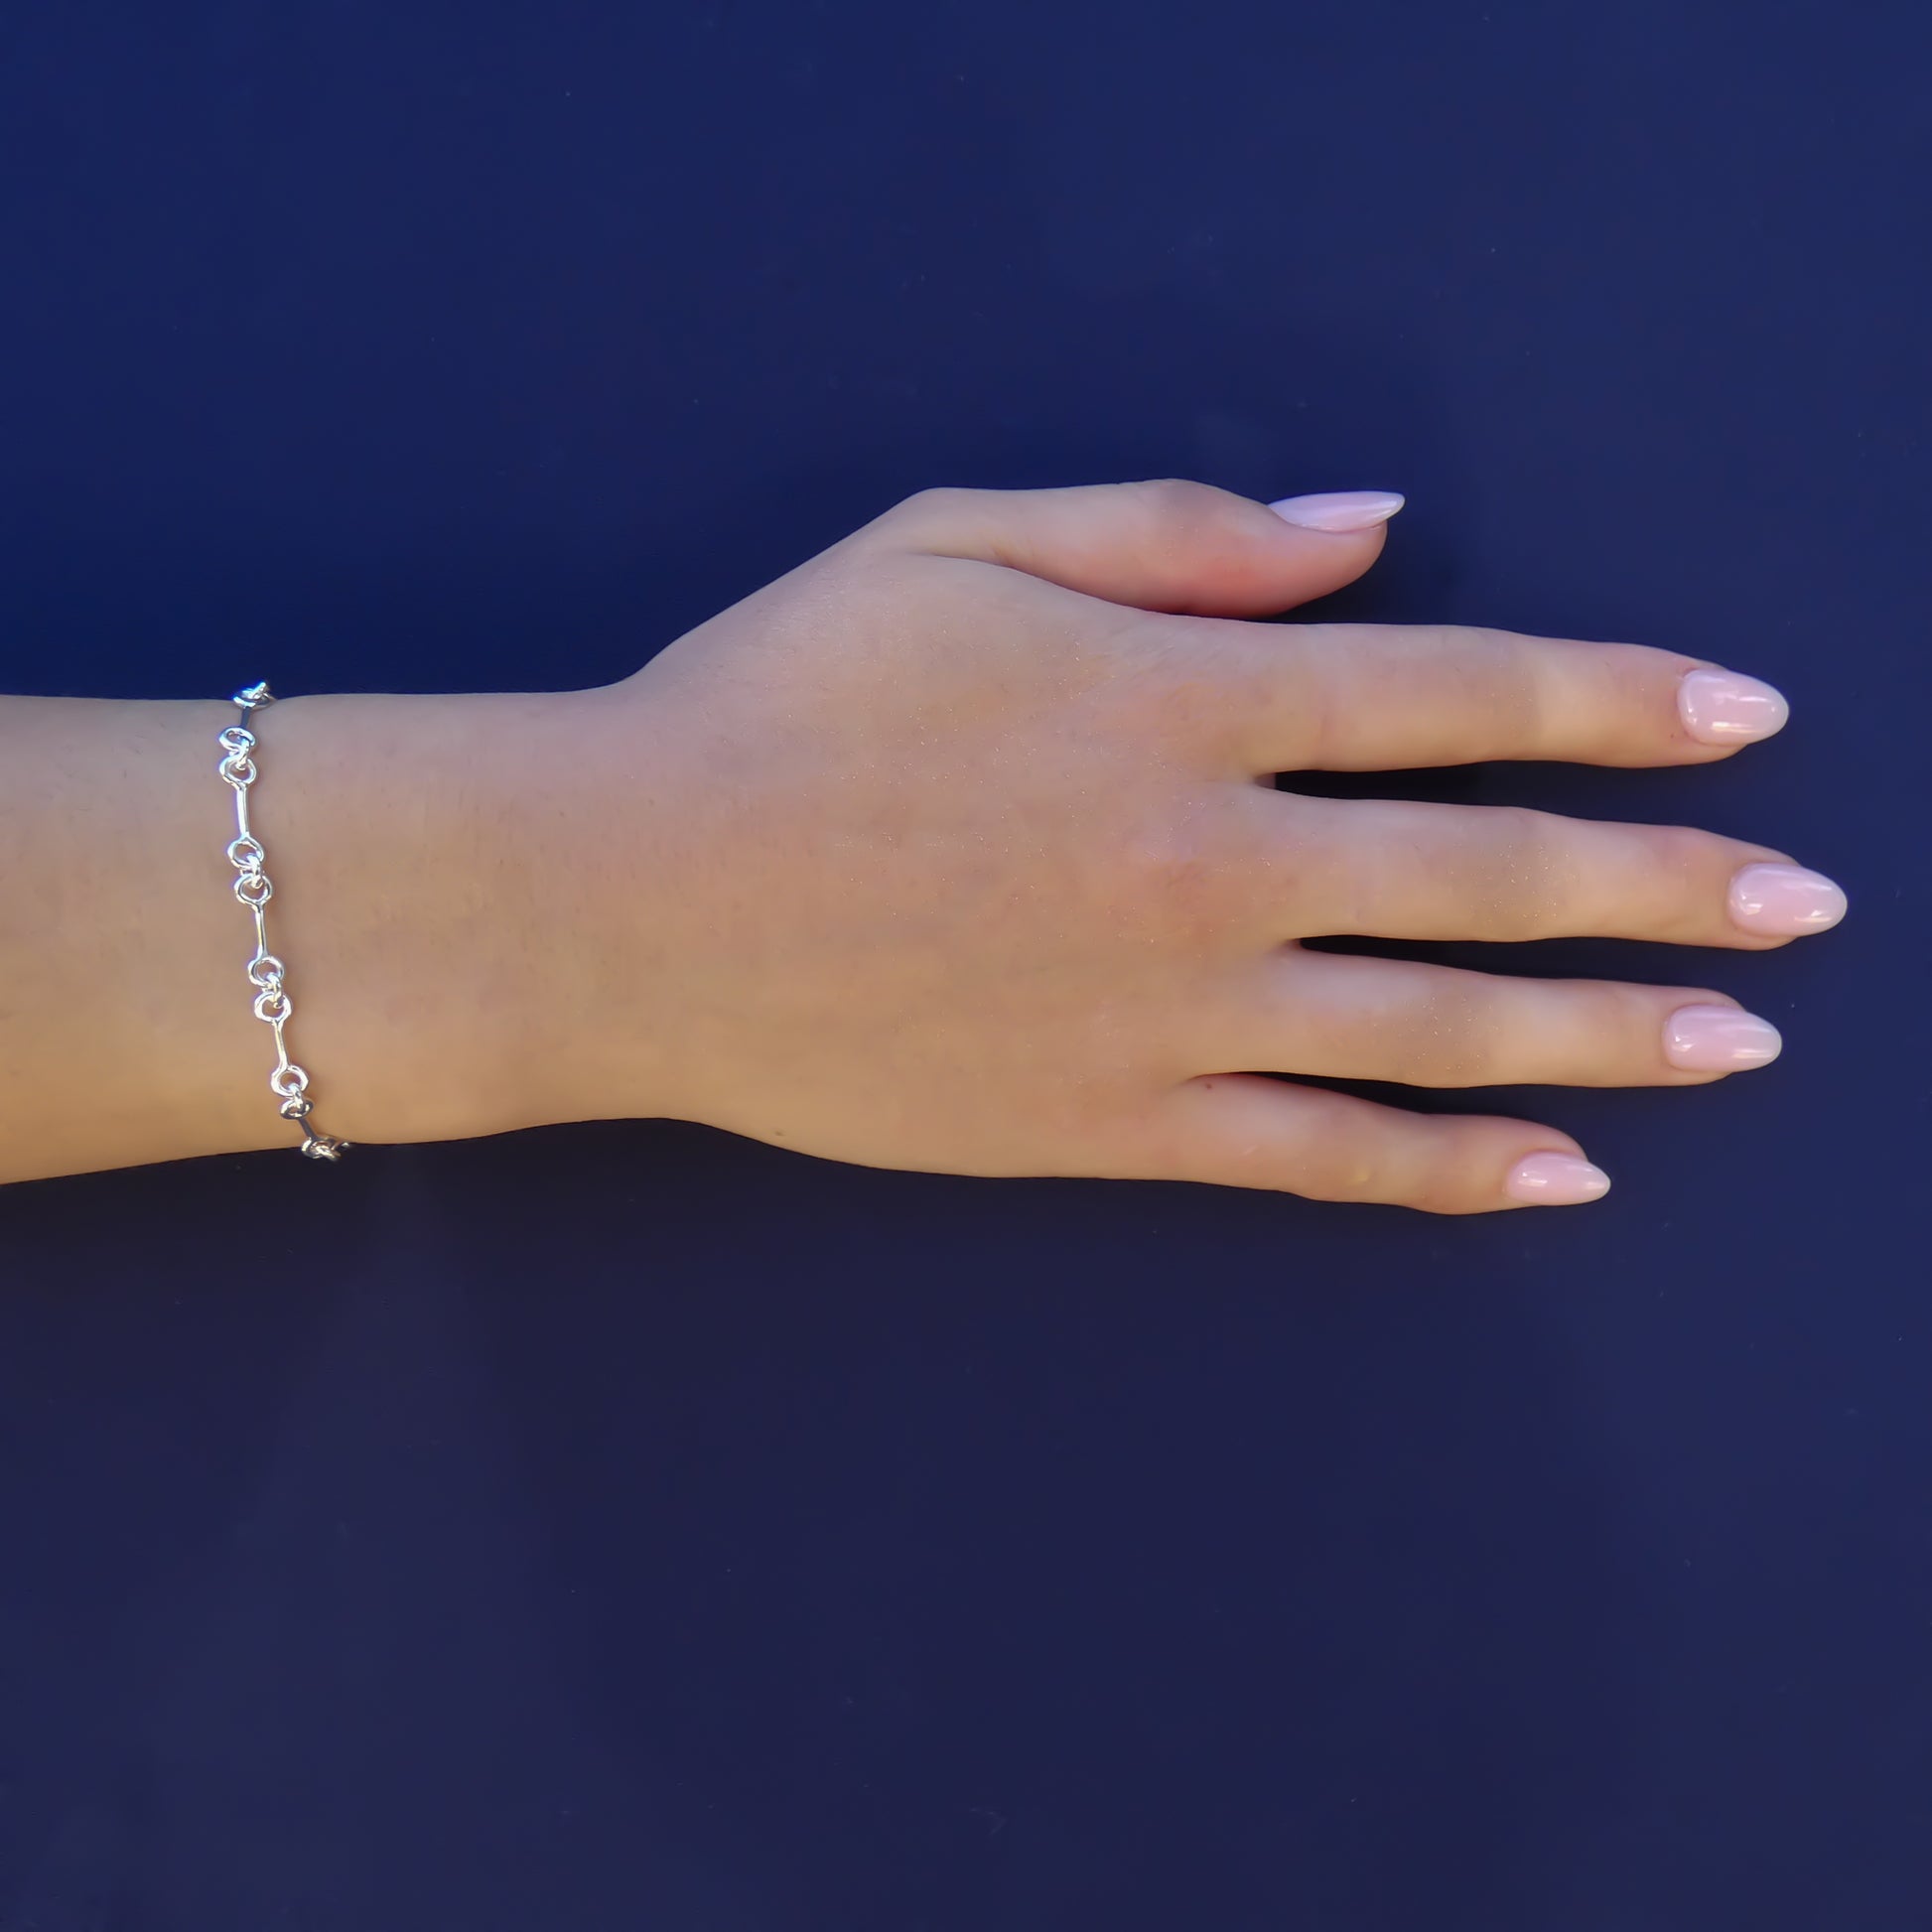 Woman wearing a lightweight silver link bracelet.